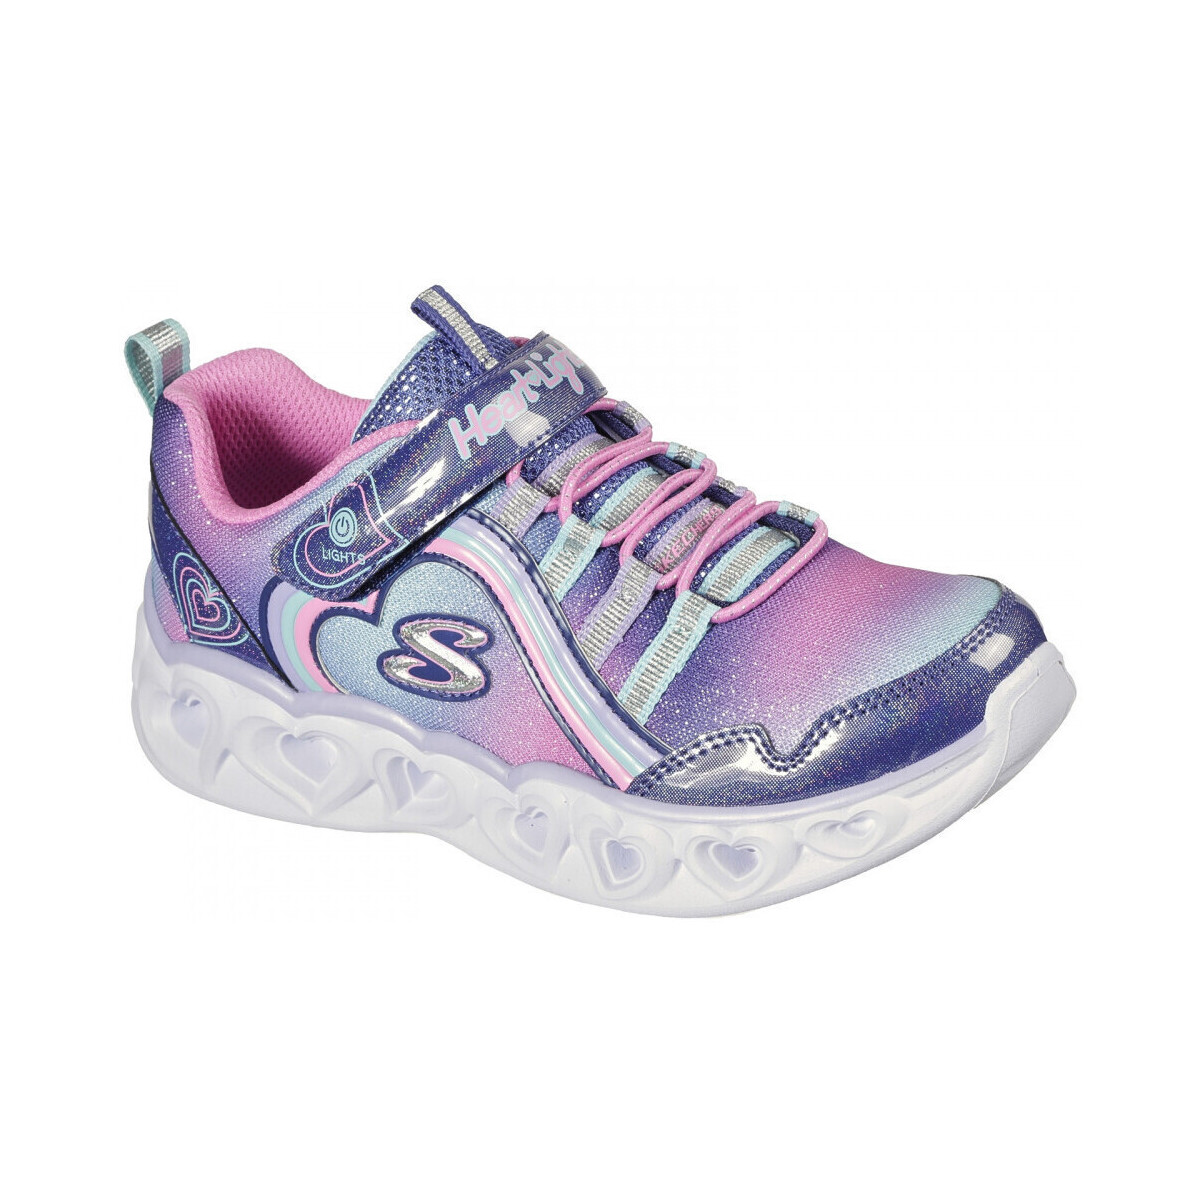 Παπούτσια για τρέξιμο Skechers Heart lights – rainbow lux